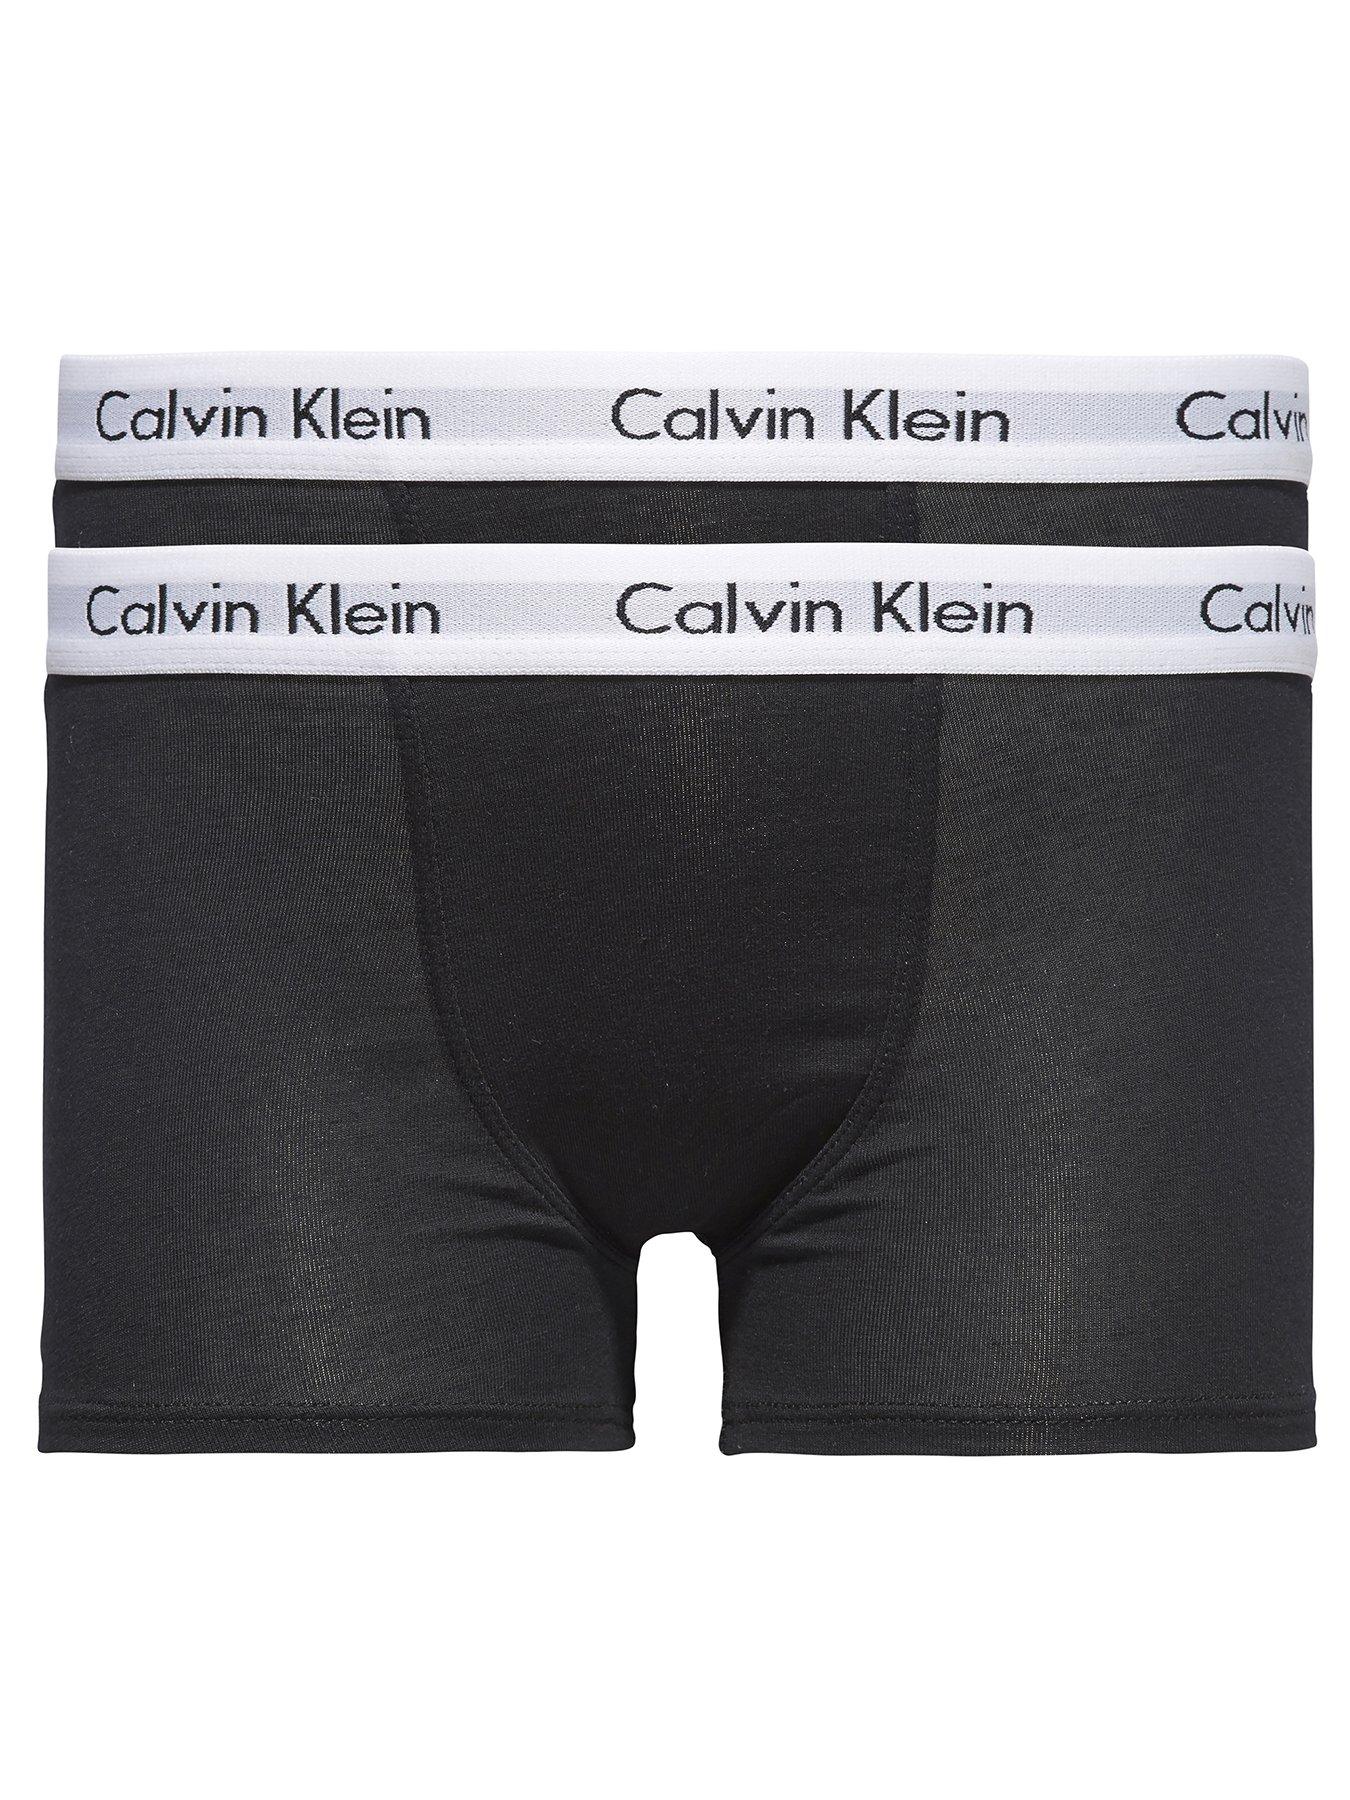 Boys Underwear, Boys Calvin Klein Boxers & Briefs